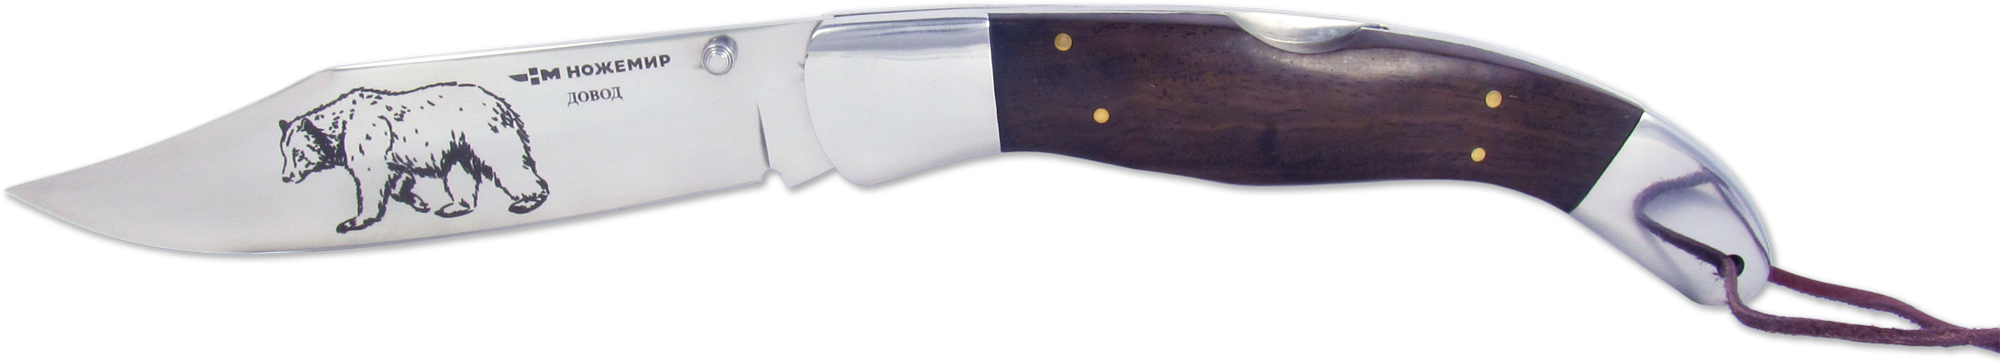 Нож складной ДОВОД C-124B "Ножемир" с нейлоновым чехлом